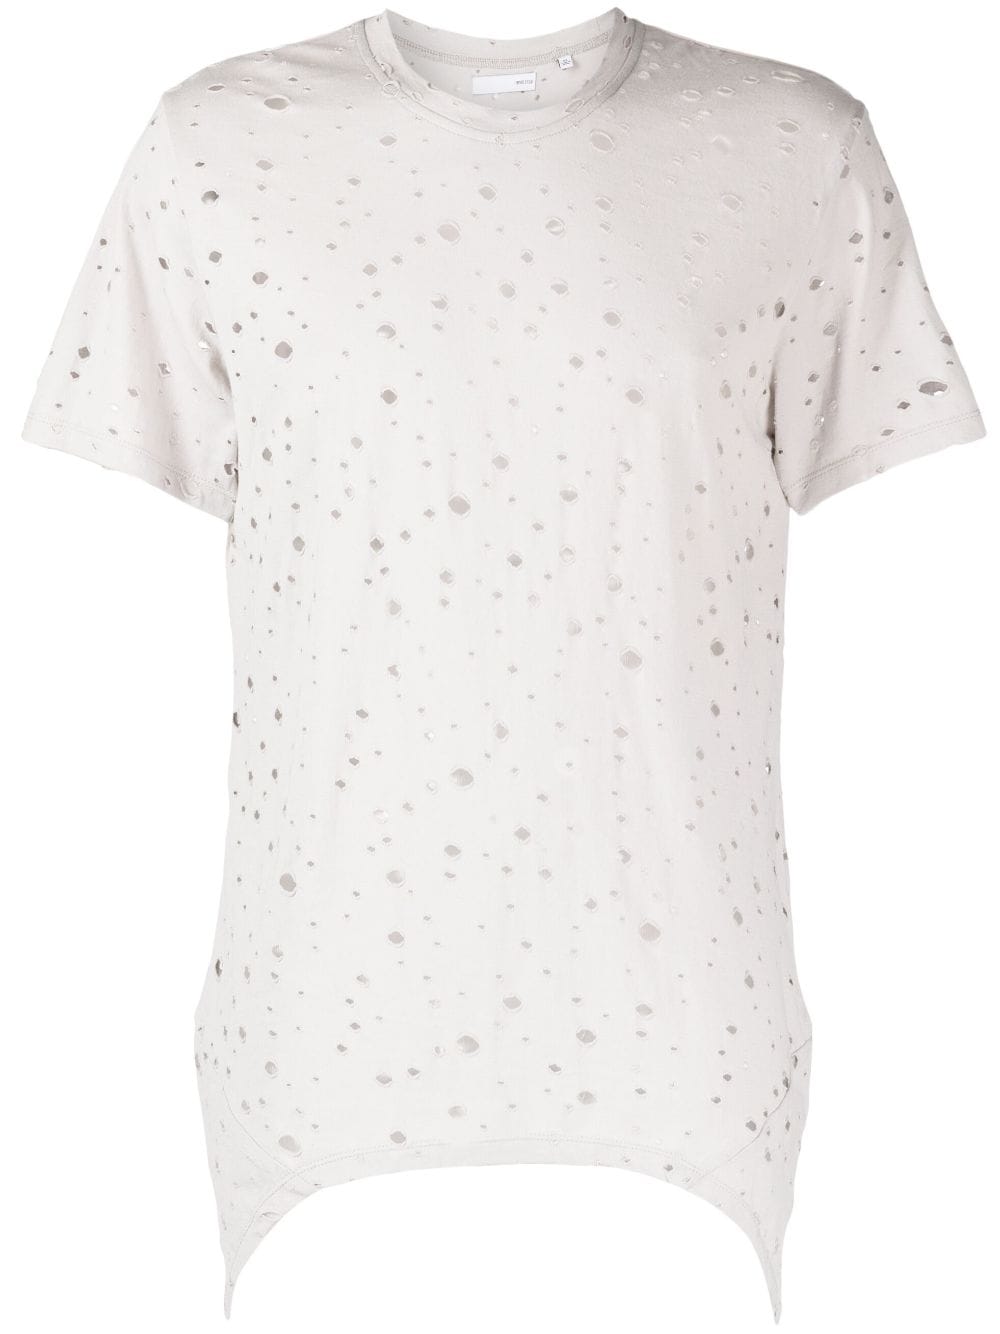 The Vendome cotton T-Shirt